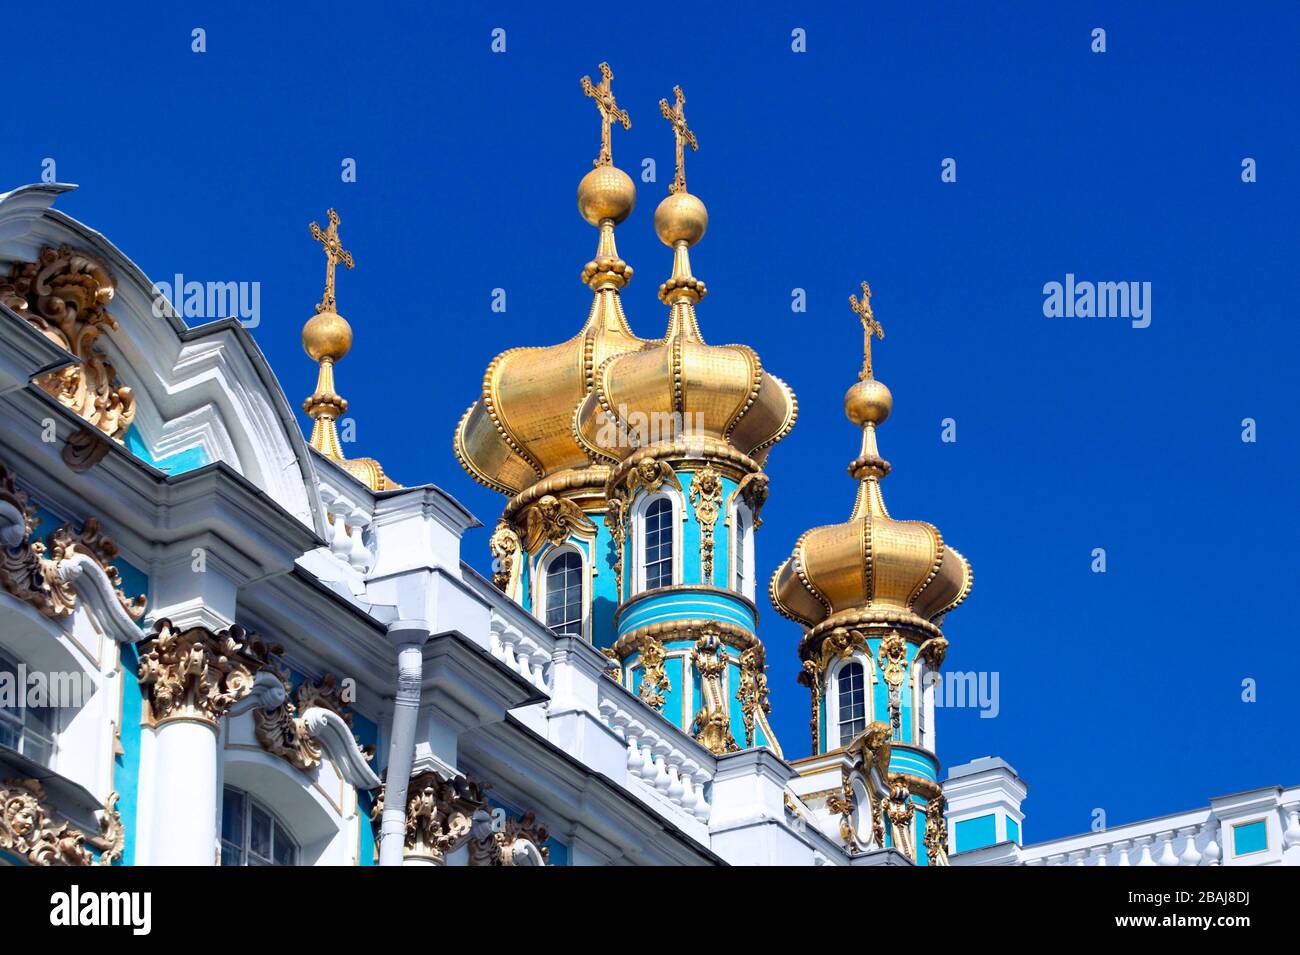 Des dômes d'oignons dorés sur le Palais Catherine, le Musée de l'Hermitage (Palais d'hiver), Tsarskoye Selo (Pouchkine), au sud de Saint-Pétersbourg, la F russe Banque D'Images